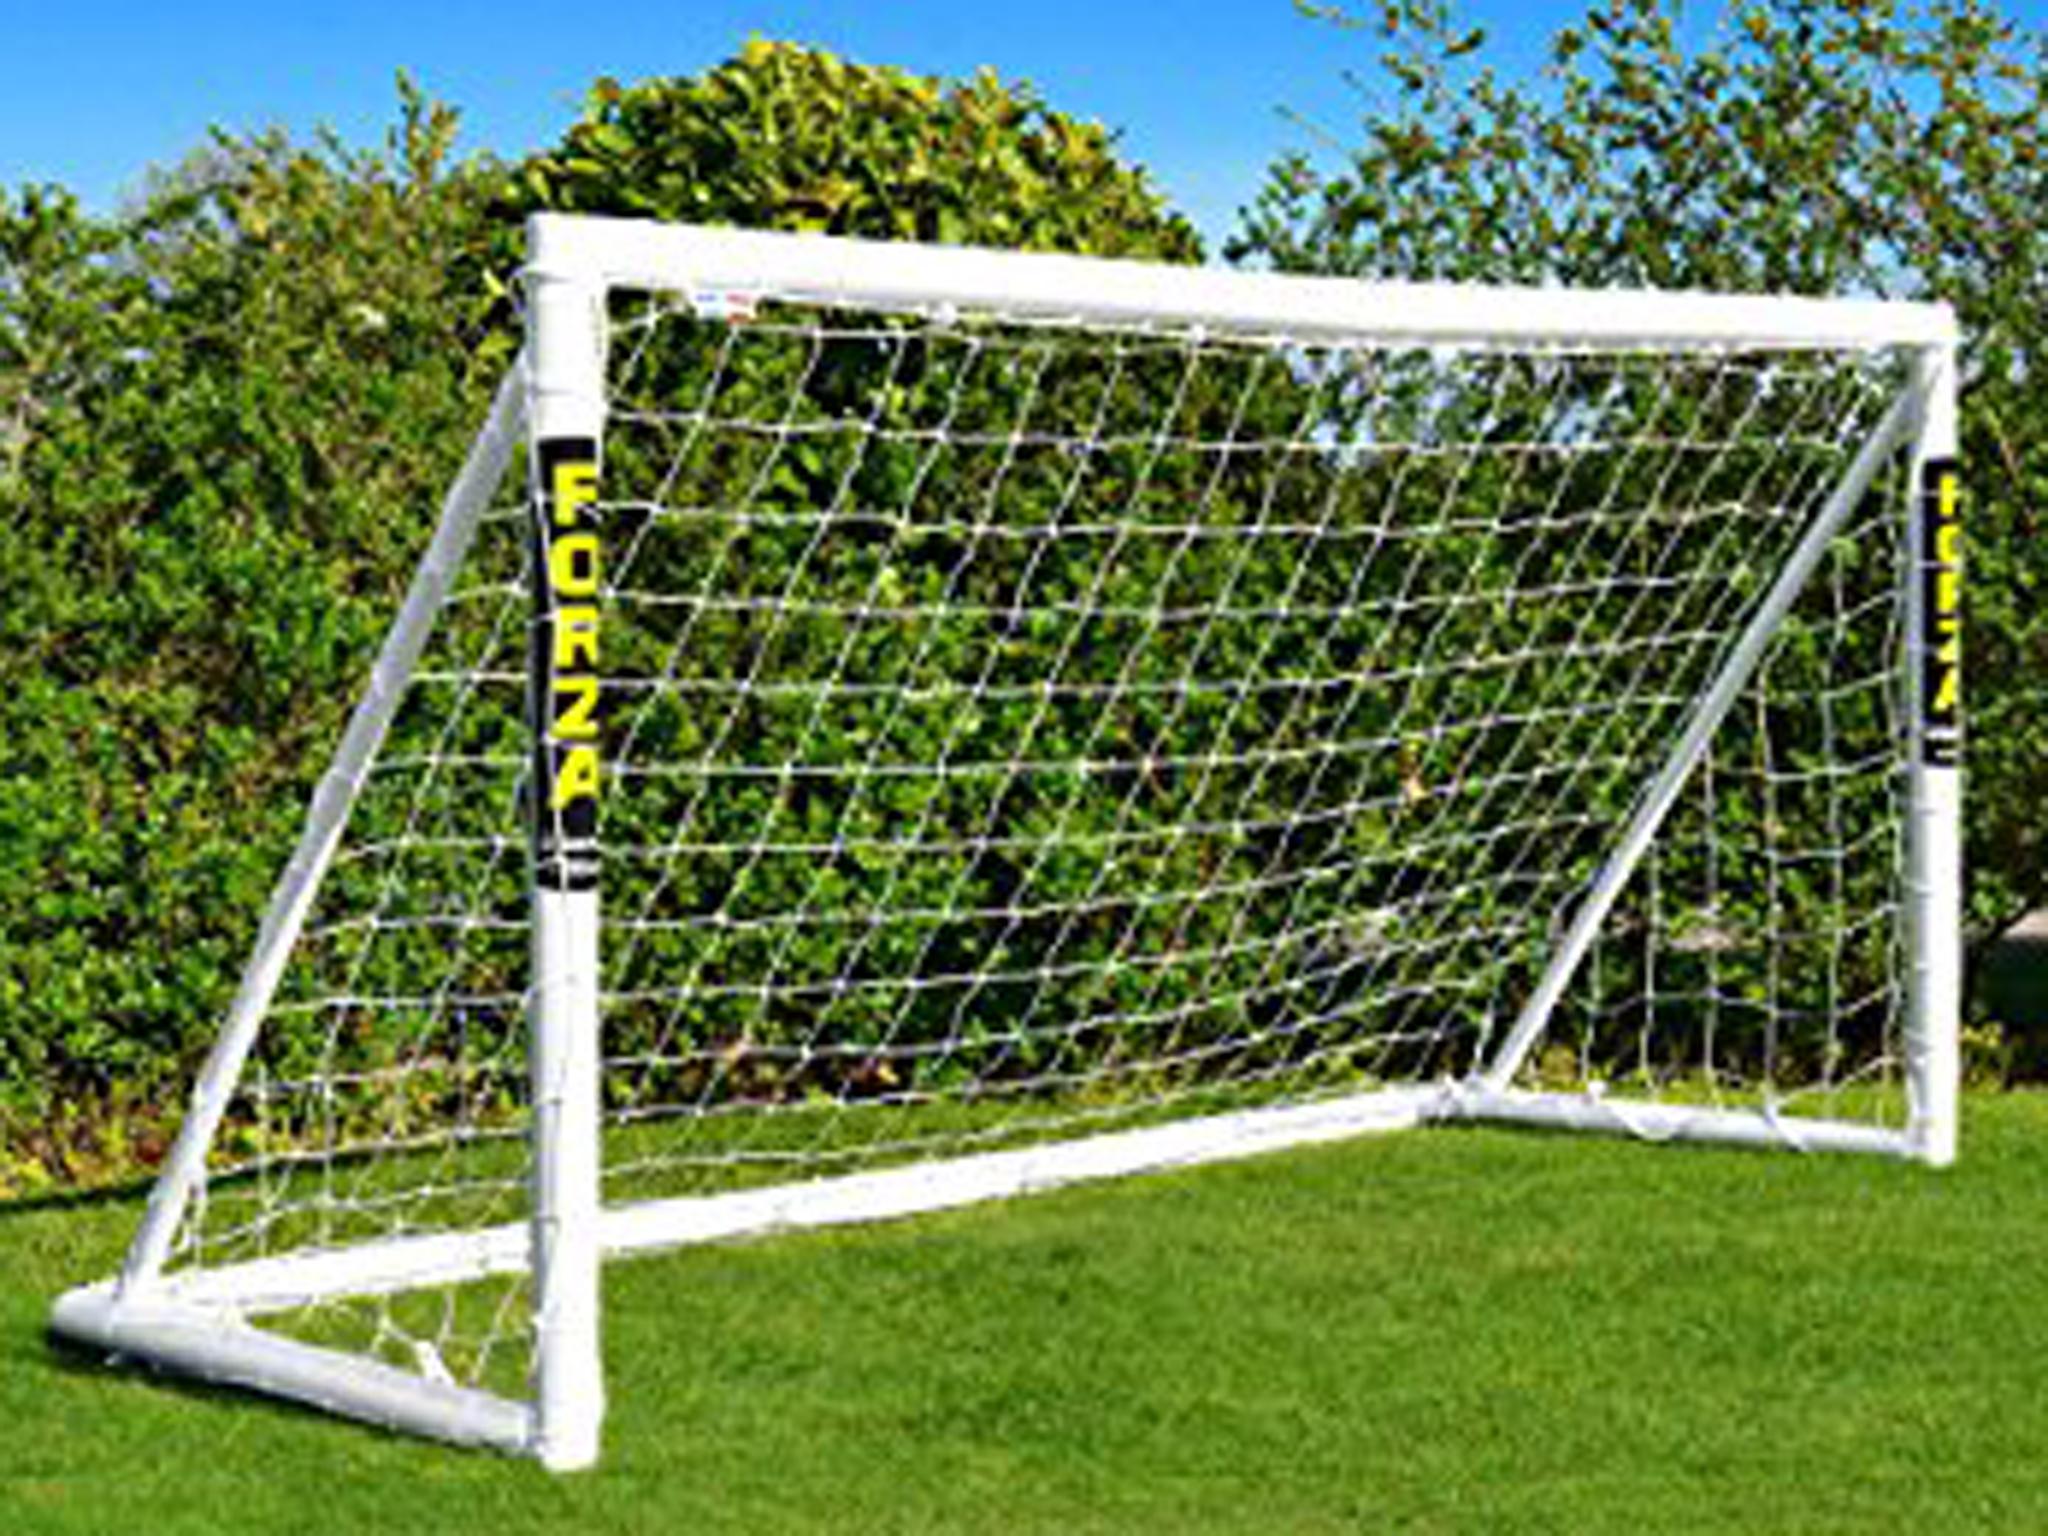 Outdoor Garden Portable Football Quick Set Up Goal Soccer Goalpost Play Net UK 